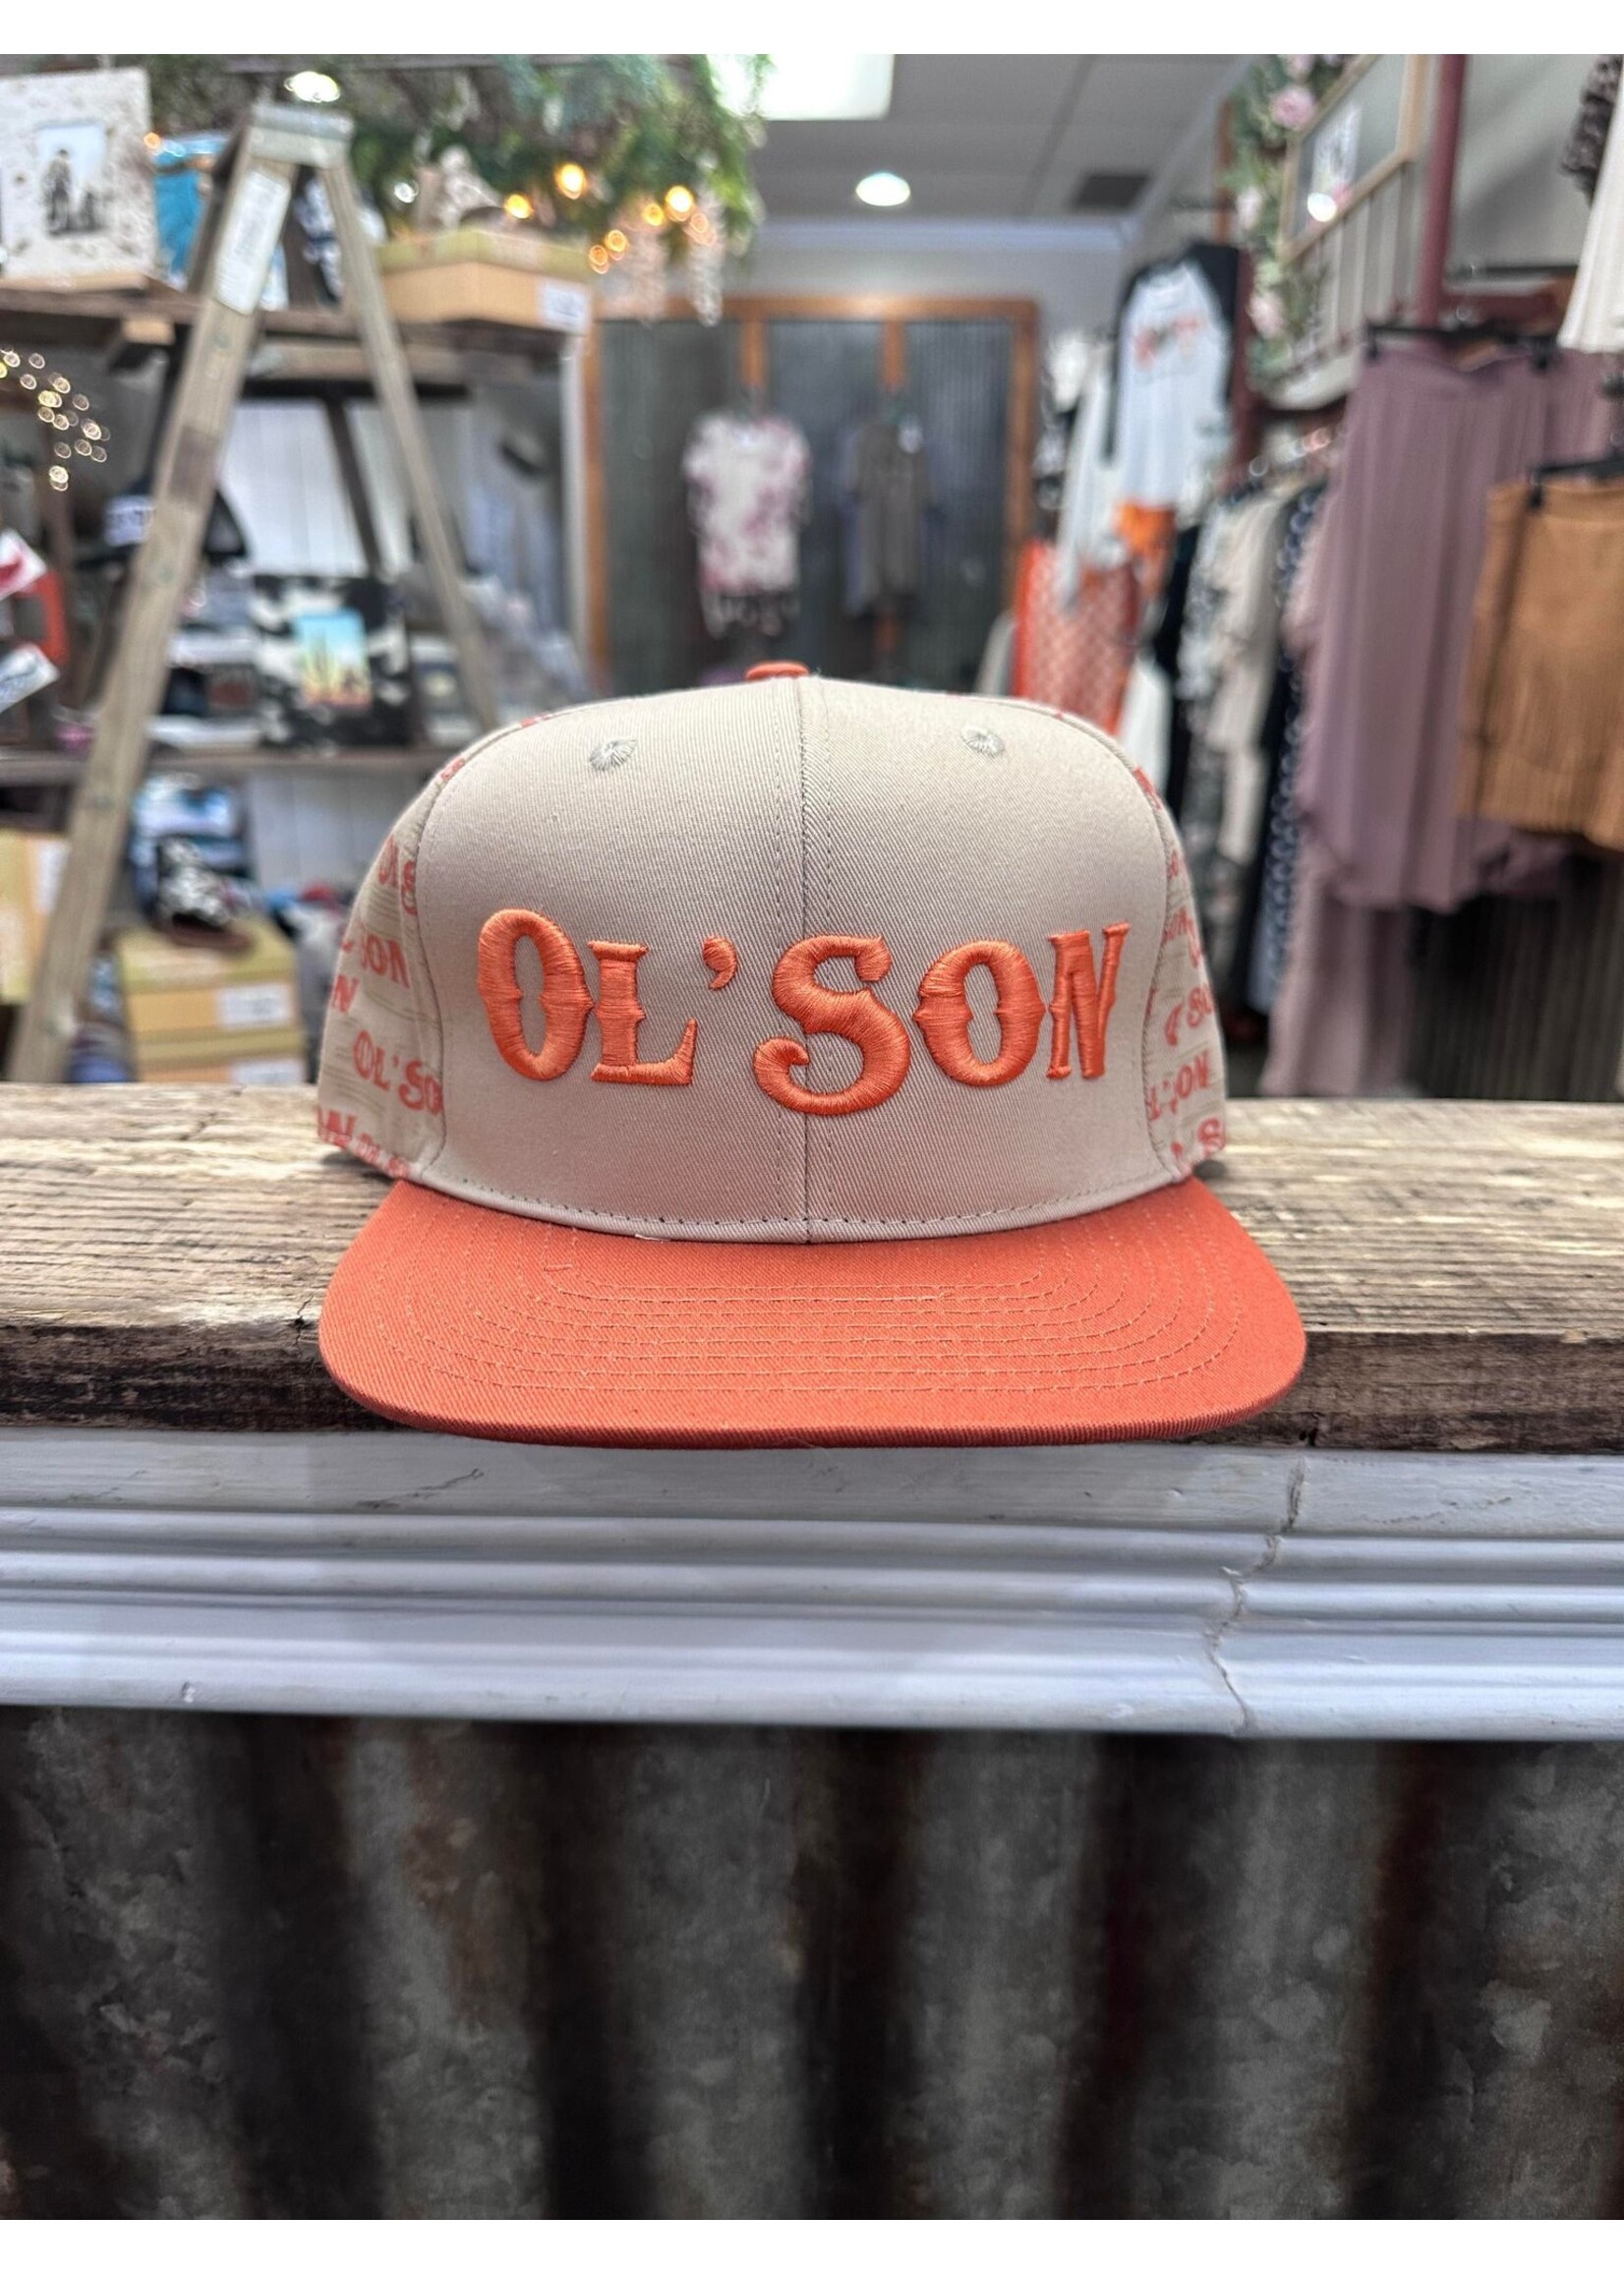 Ol' Son Mens Hats